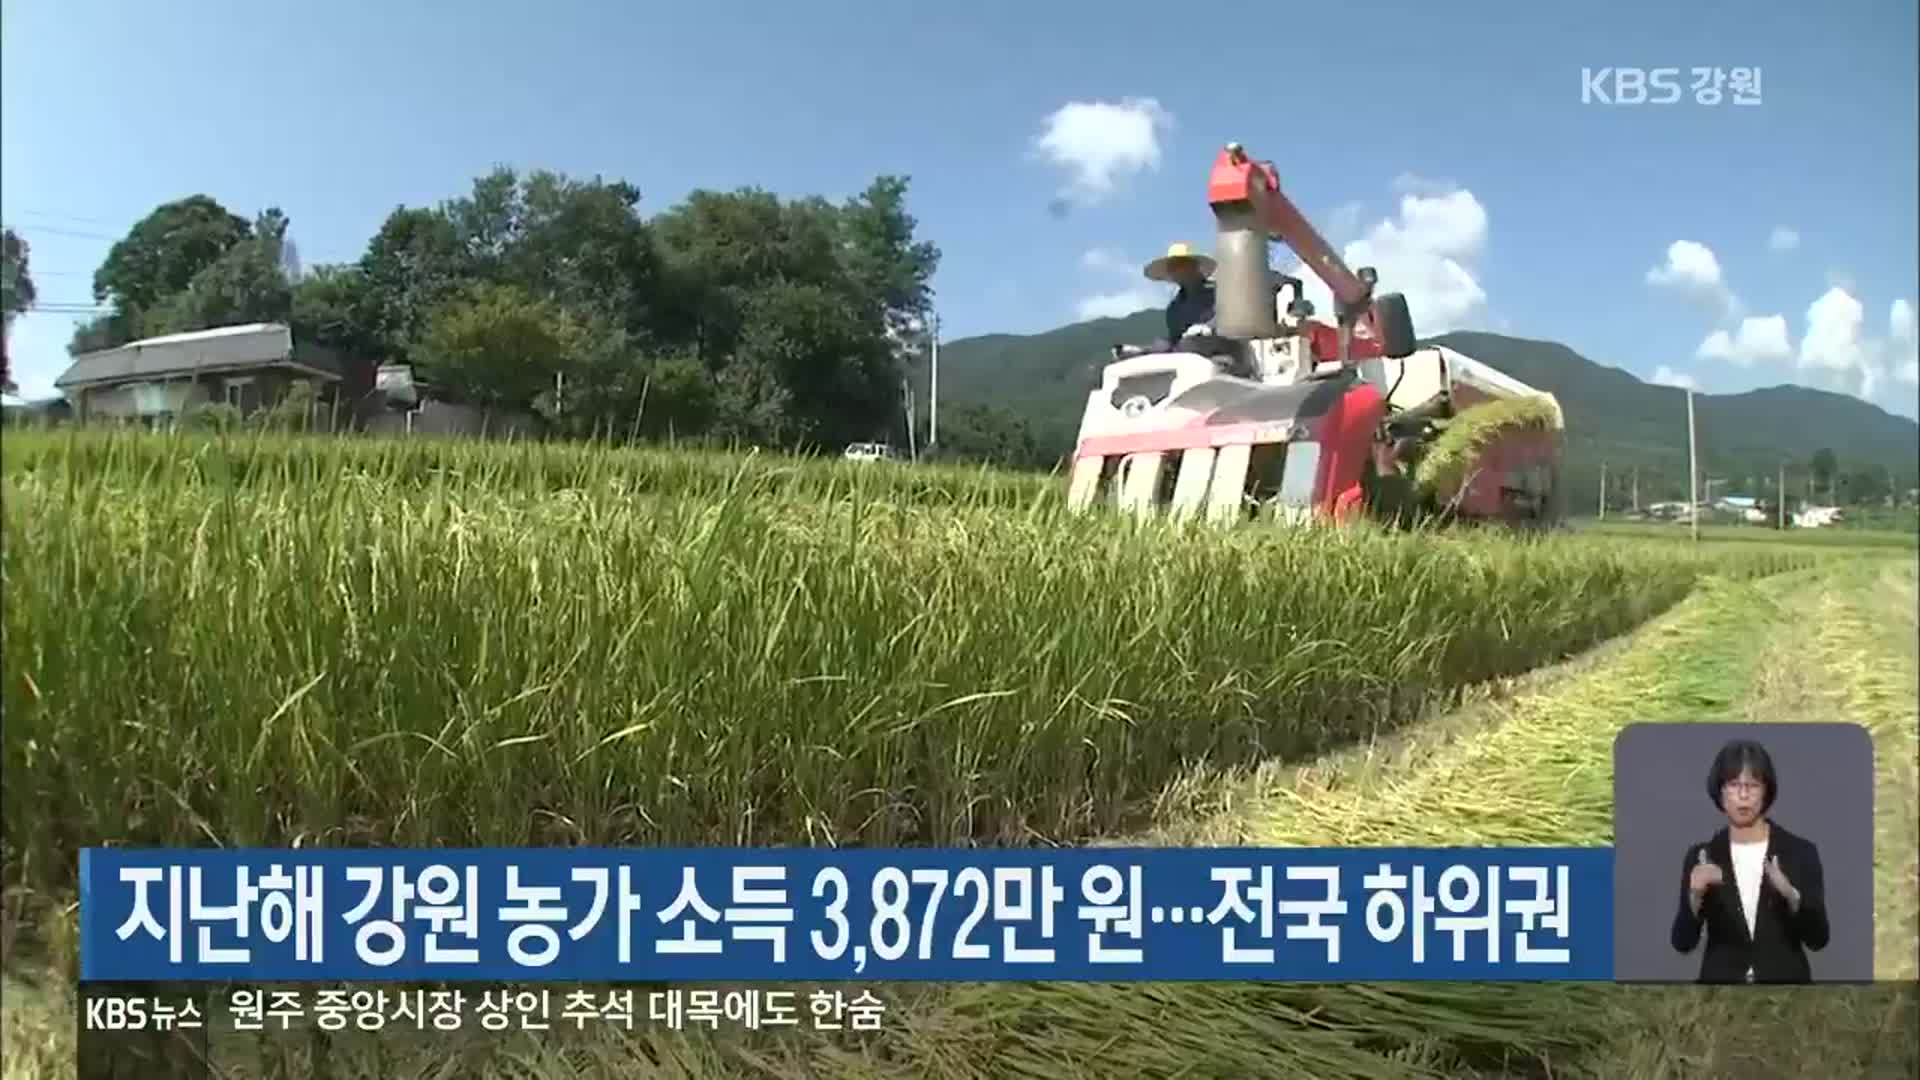 지난해 강원 농가 소득 3,872만 원…전국 하위권